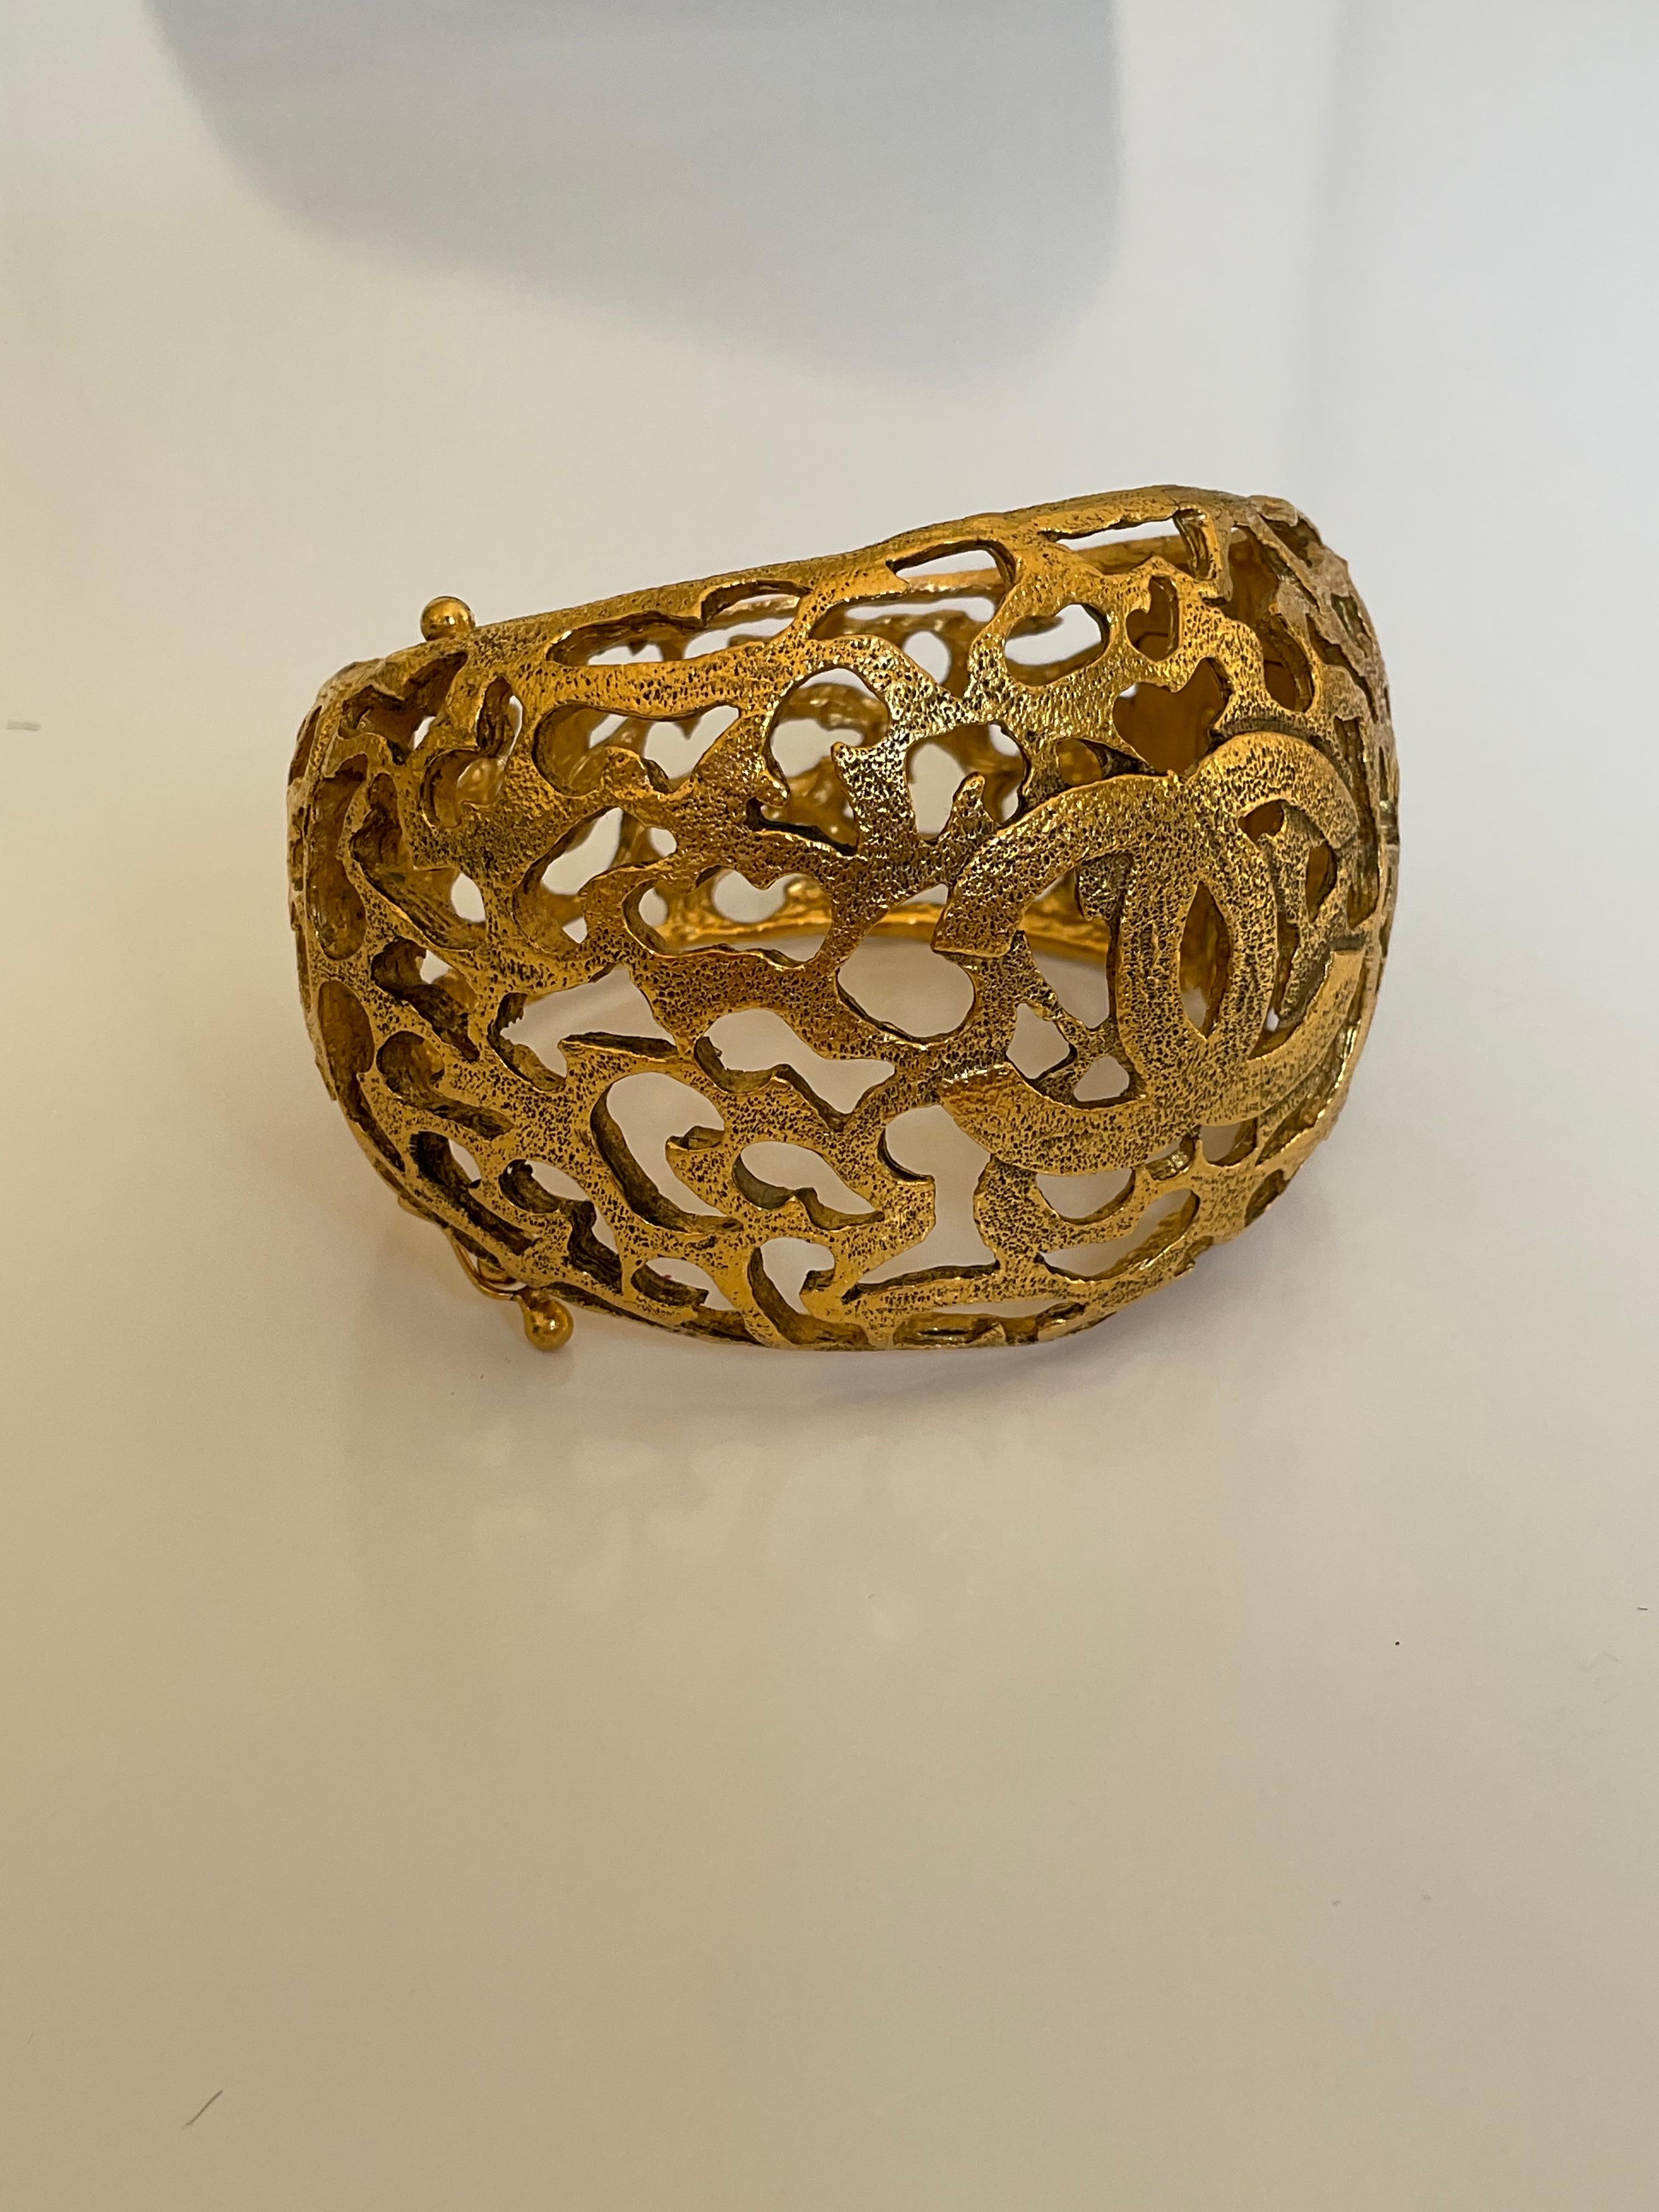 Diese goldfarbene Manschette von CHANEL im Vintage-Stil ist ein unverzichtbares Stück für Ihre Sammlung. Dieses bemerkenswerte Armband mit dem ikonischen, ineinandergreifenden CC-Logo des Hauses Chanel zeichnet sich durch ein kompliziertes Design